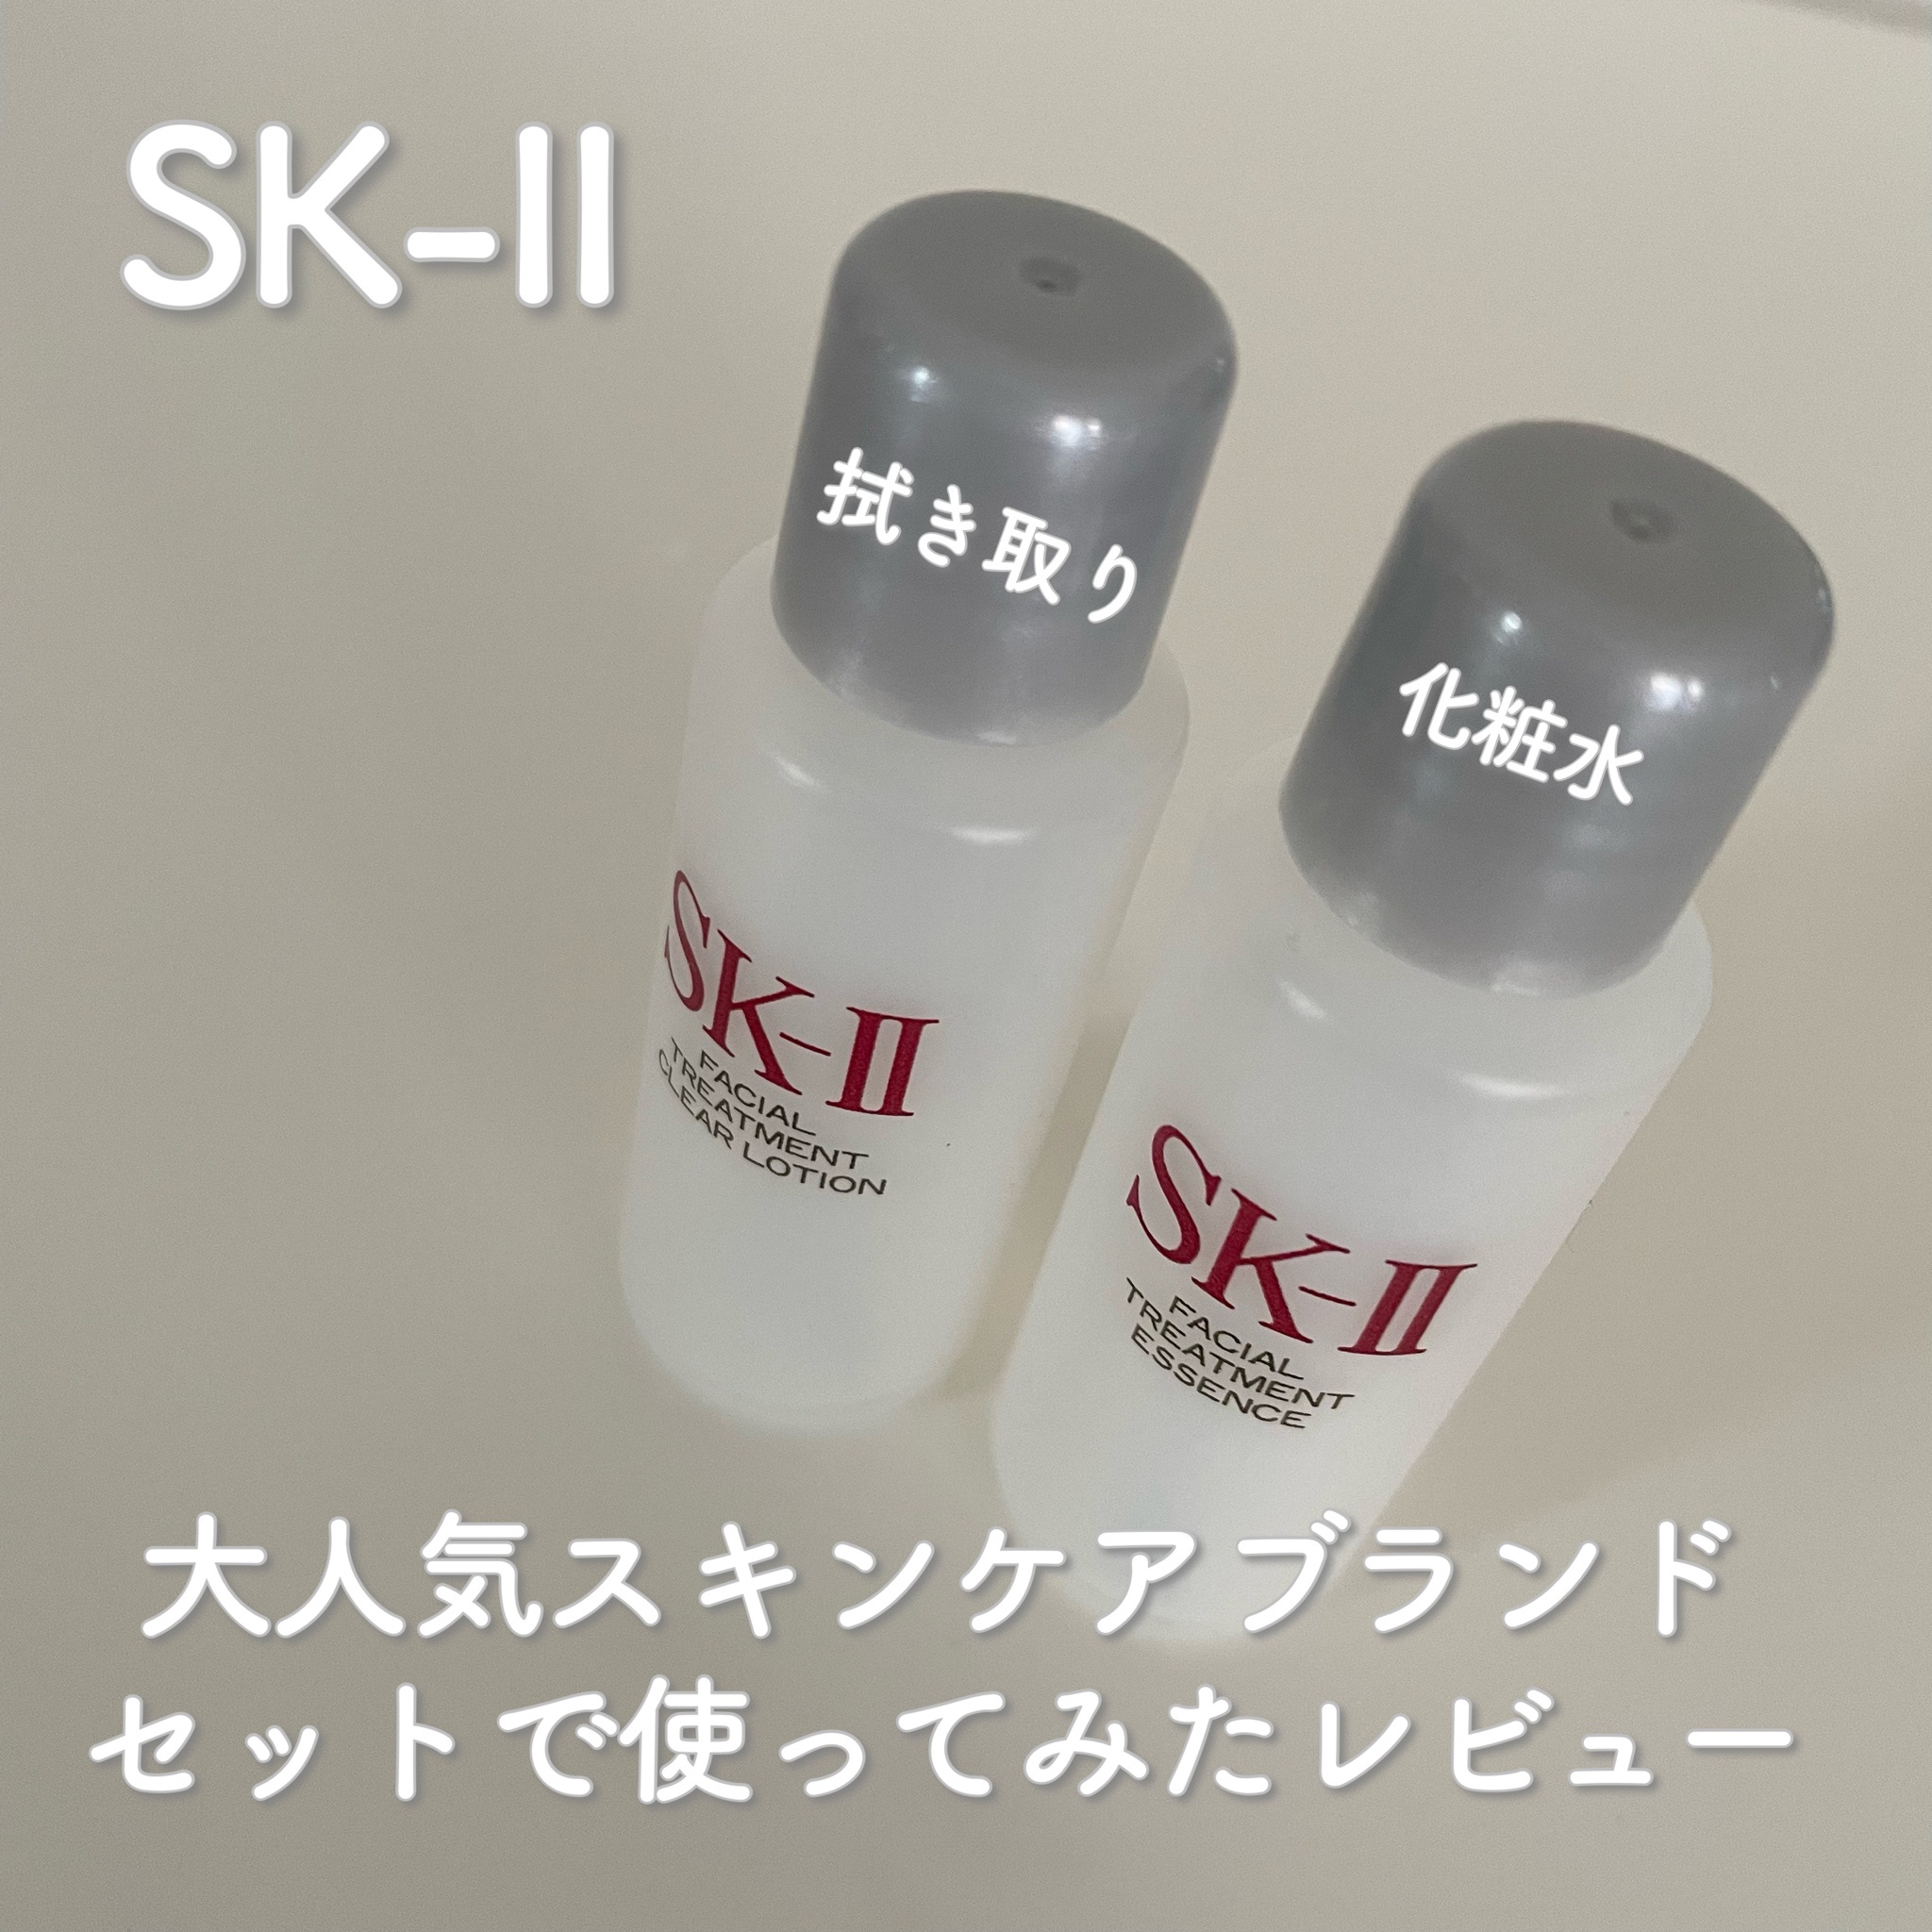 SK-II / フェイシャル トリートメント クリア ローションの公式商品 